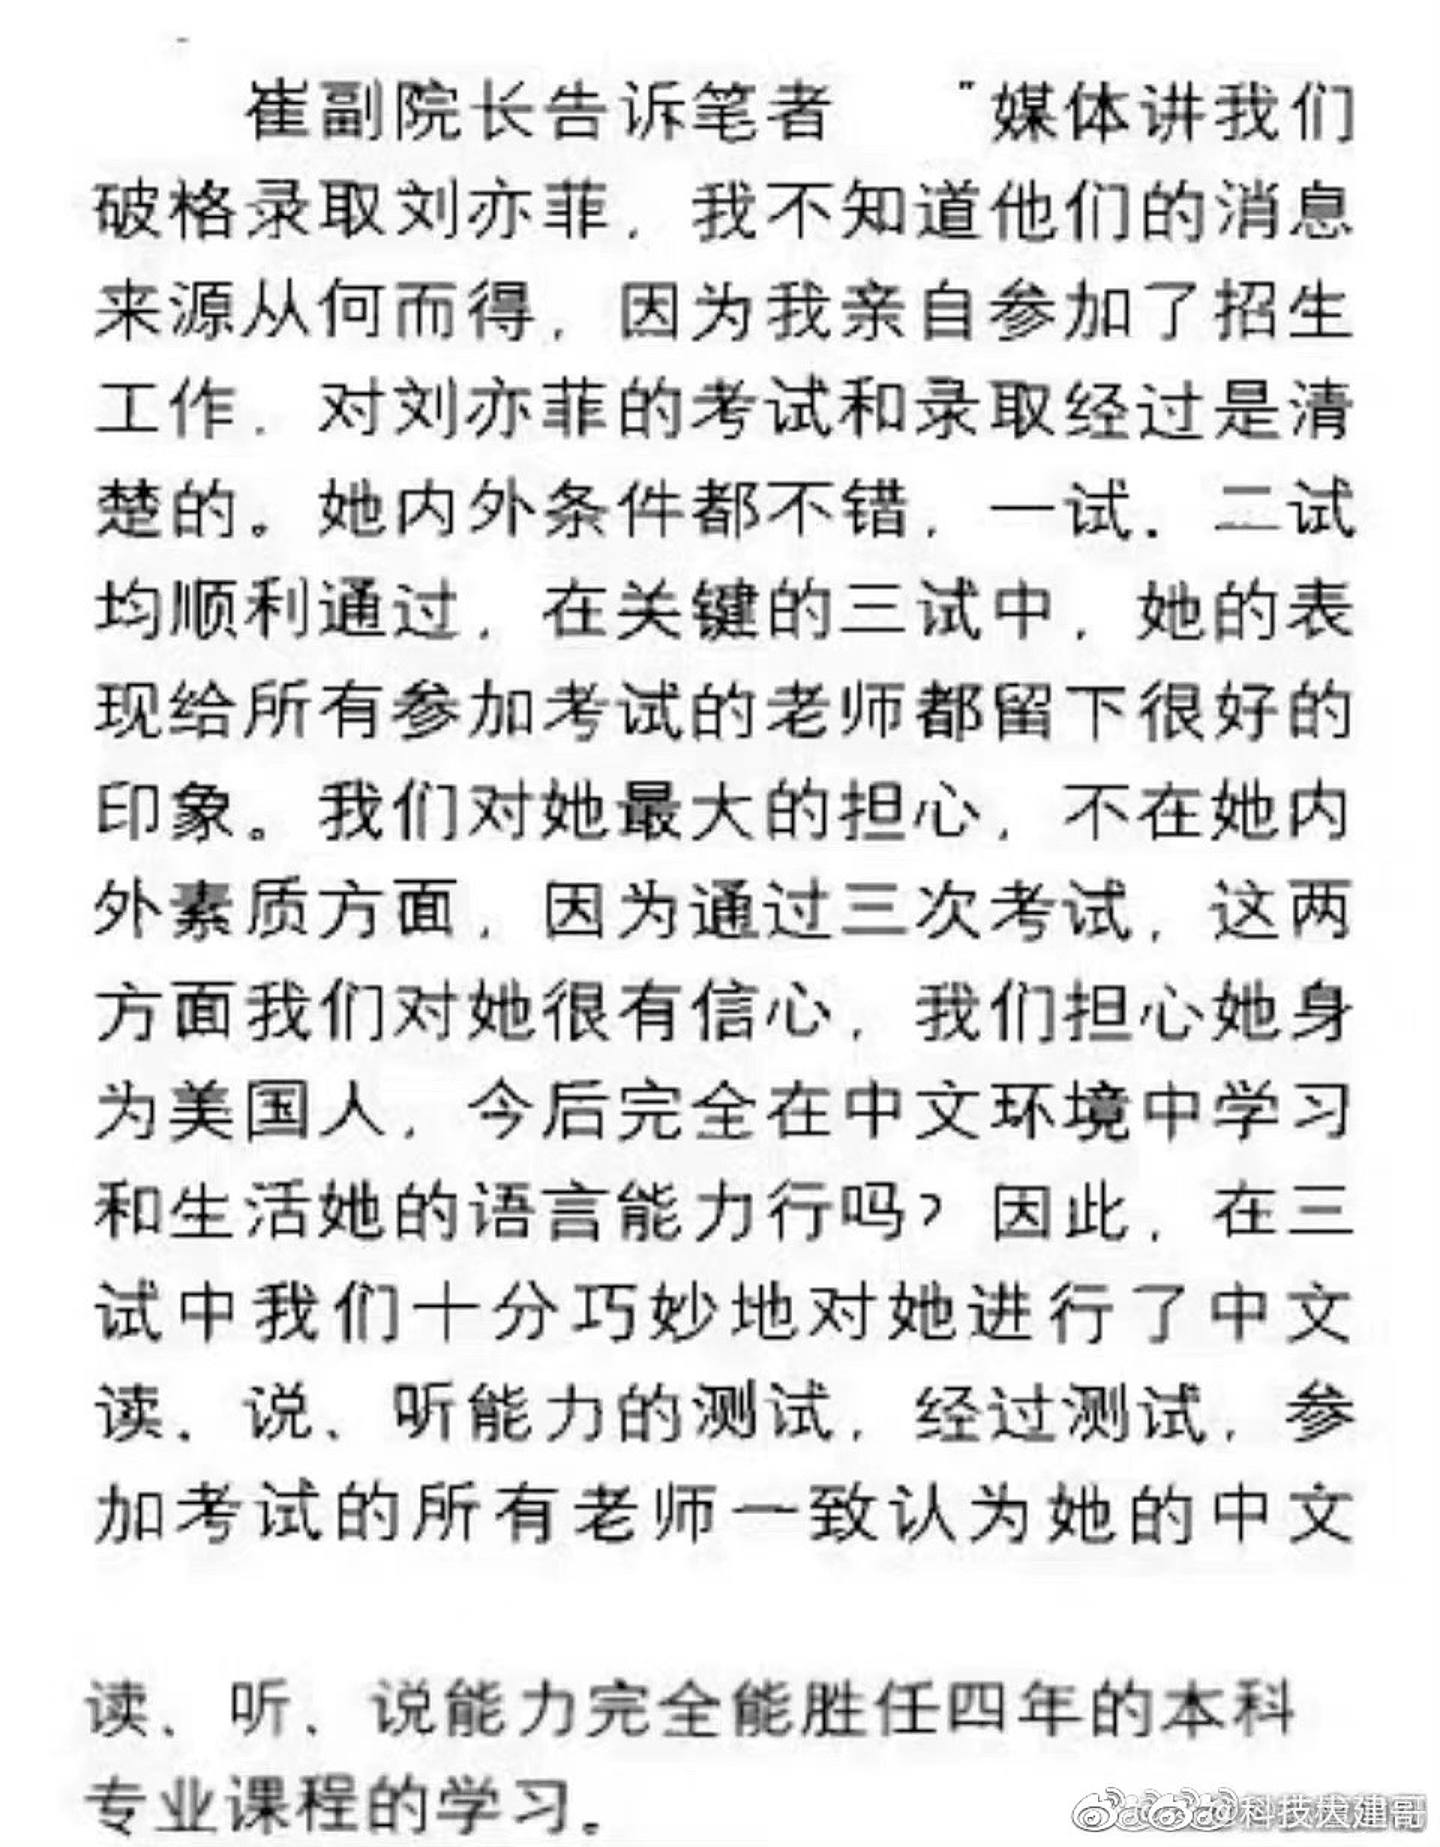 劉亦菲粉絲翻到以前的採訪稱劉亦菲有經過官方程序入學。（微博）